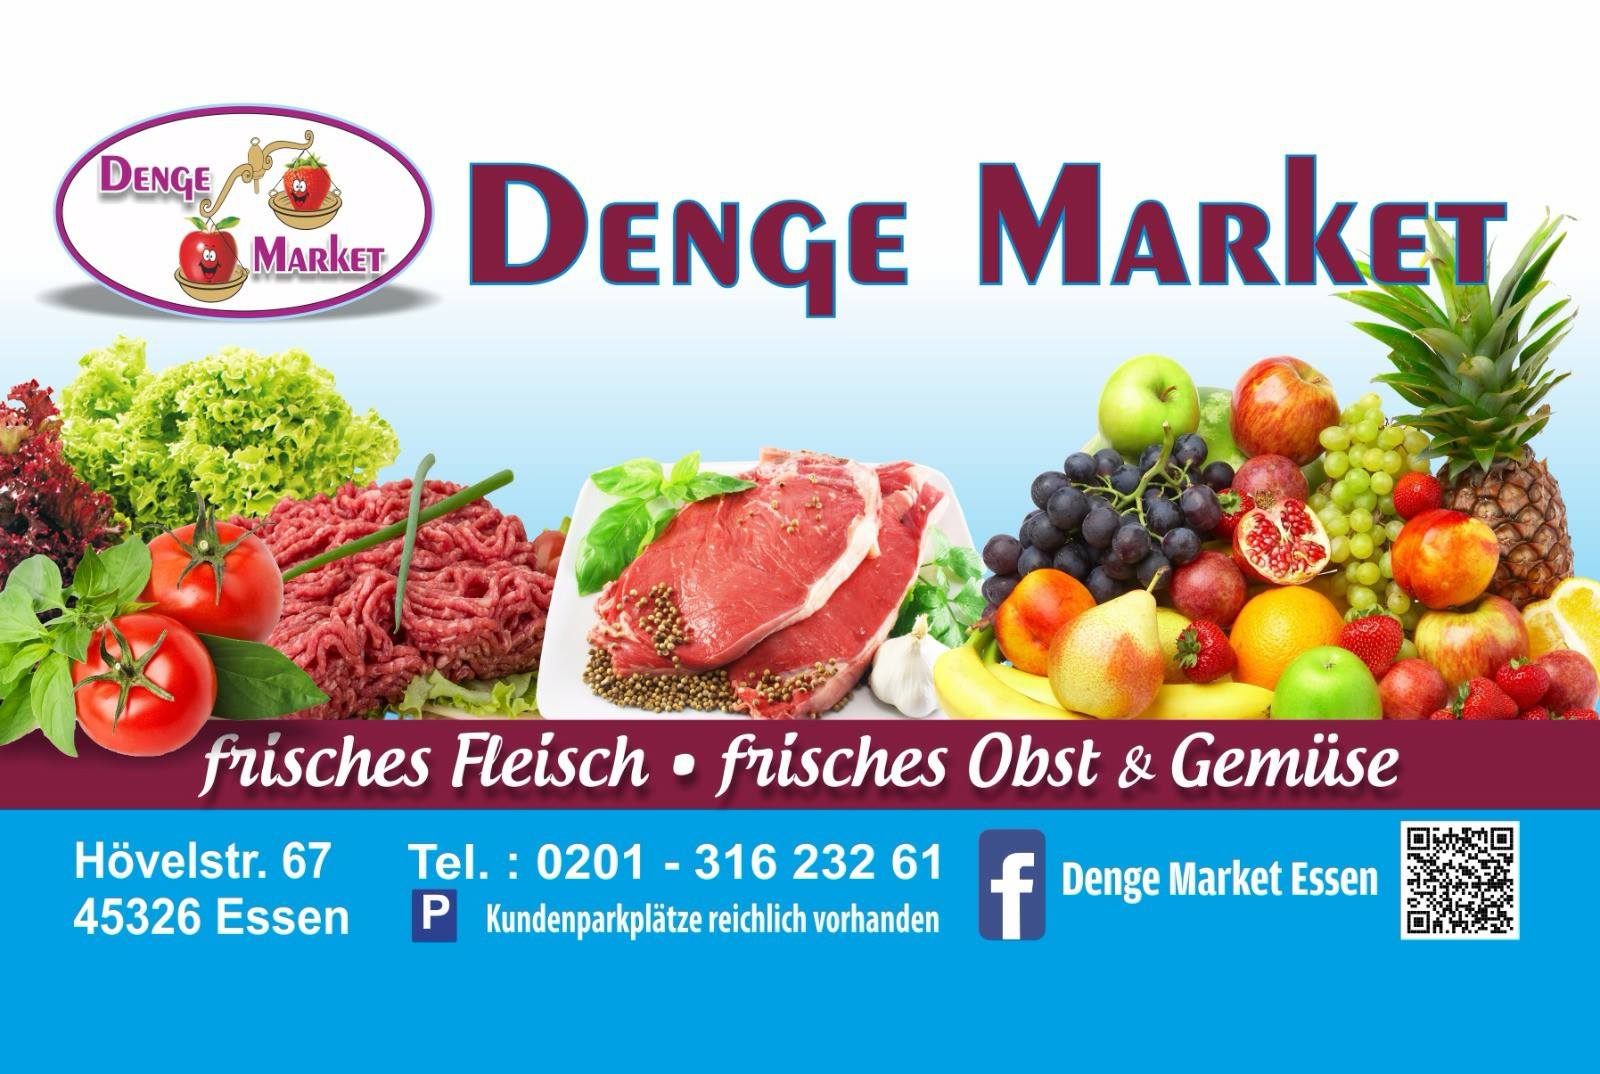 Denge Market